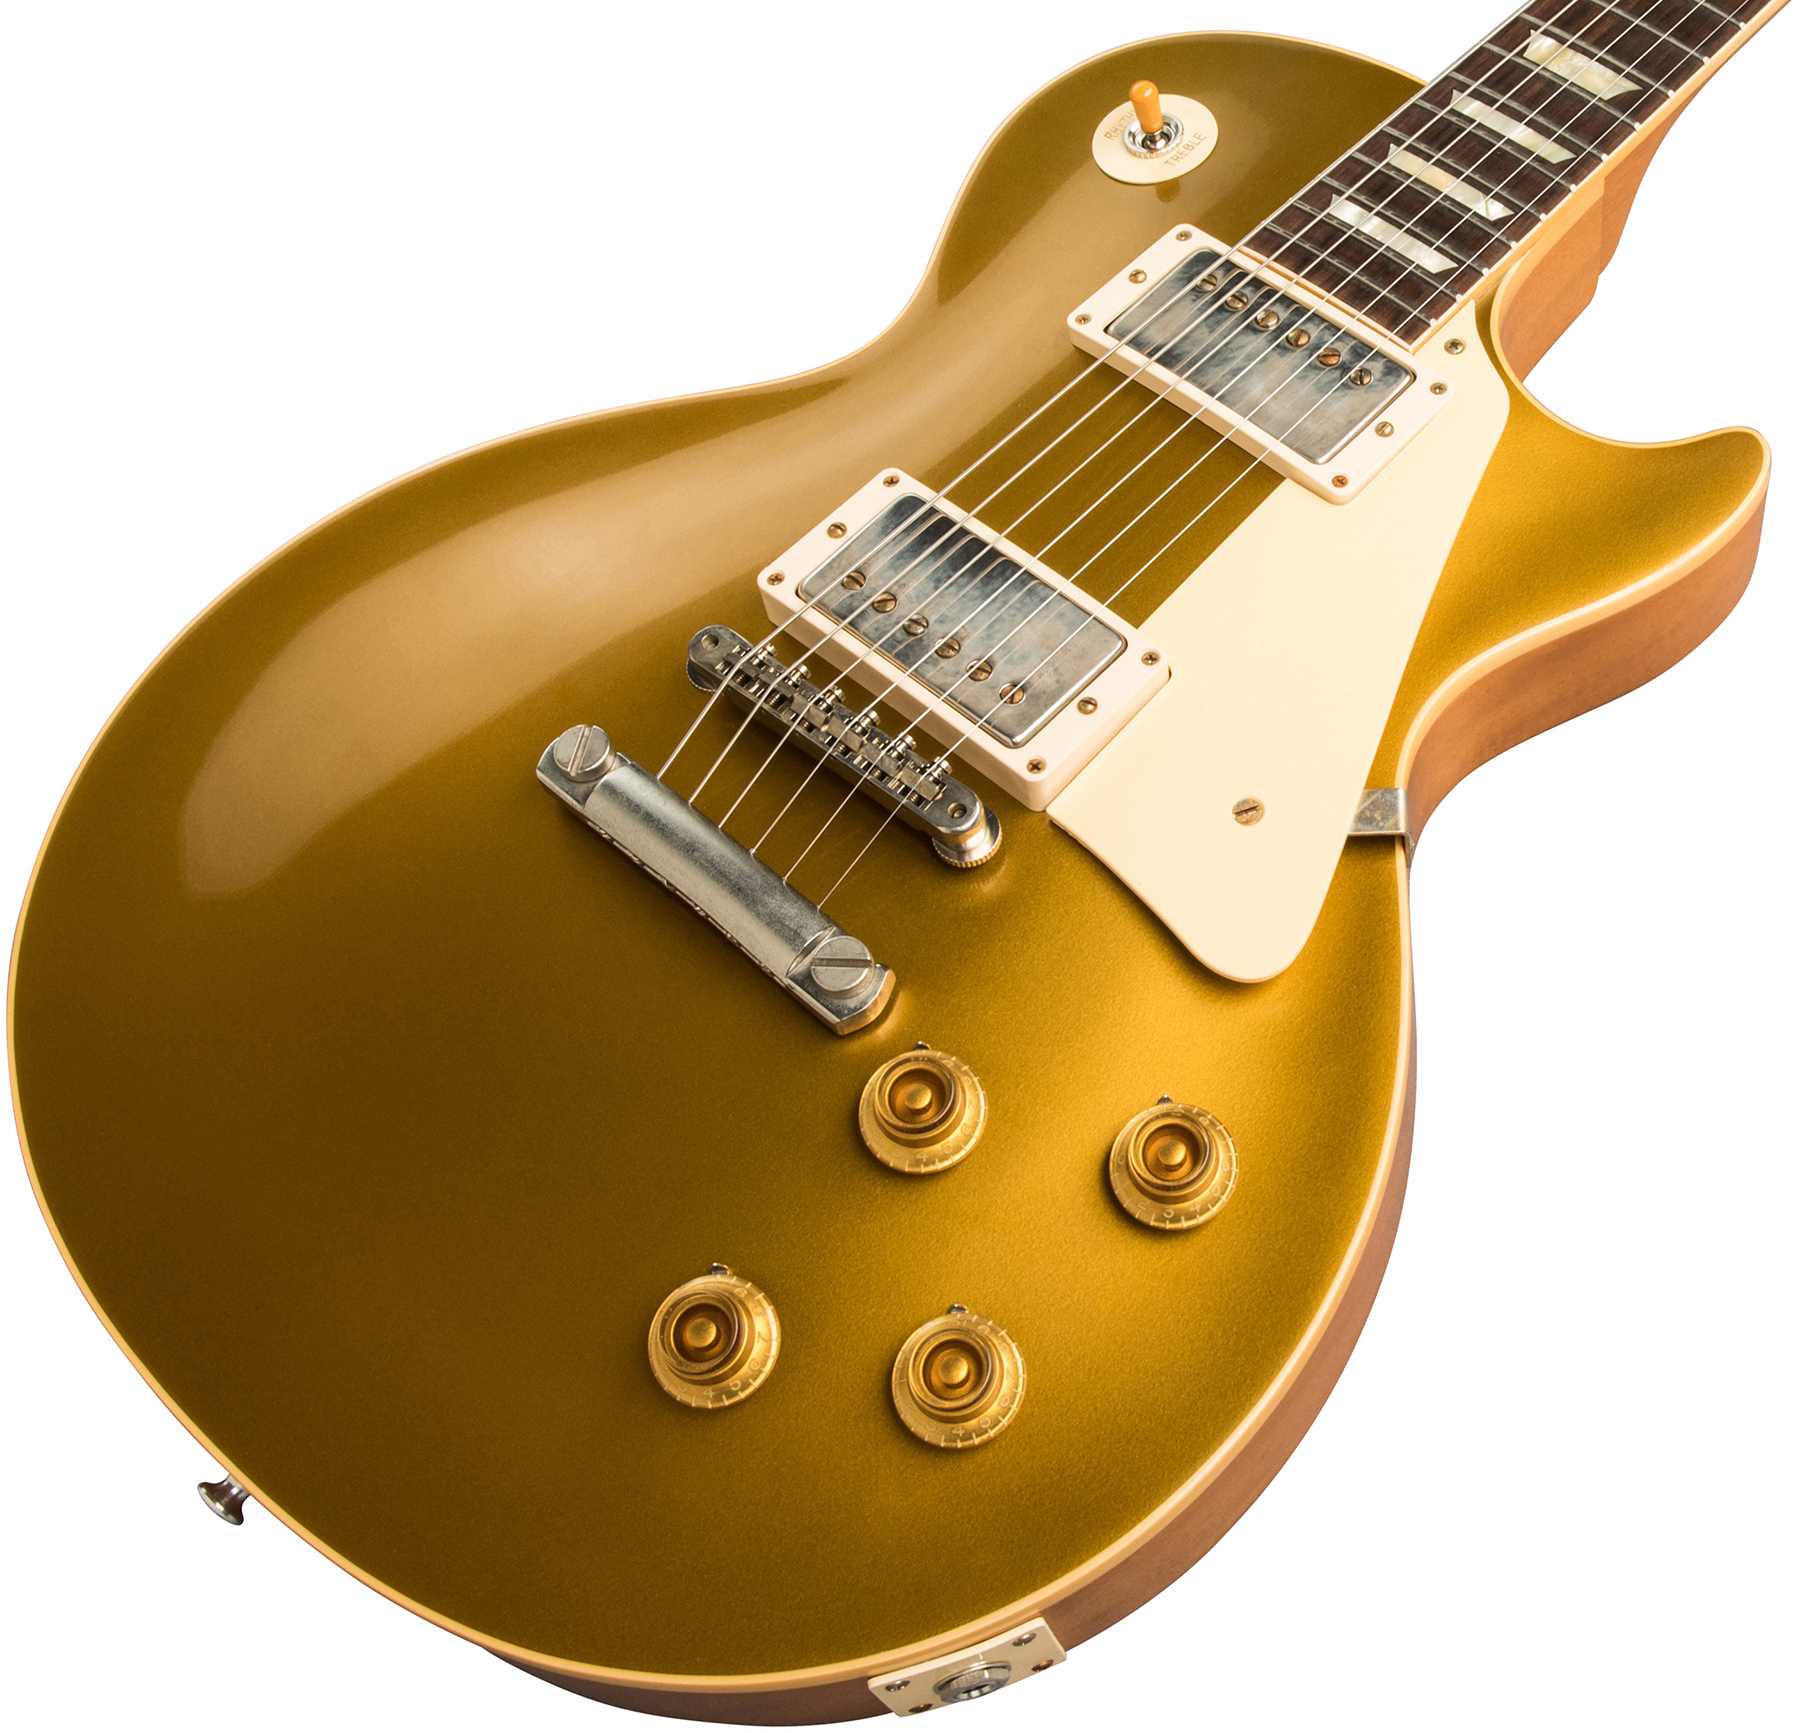 Gibson Custom Shop Les Paul Goldtop 1957 Reissue 2019 2h Ht Rw - Vos Double Gold - Guitarra eléctrica de corte único. - Variation 3